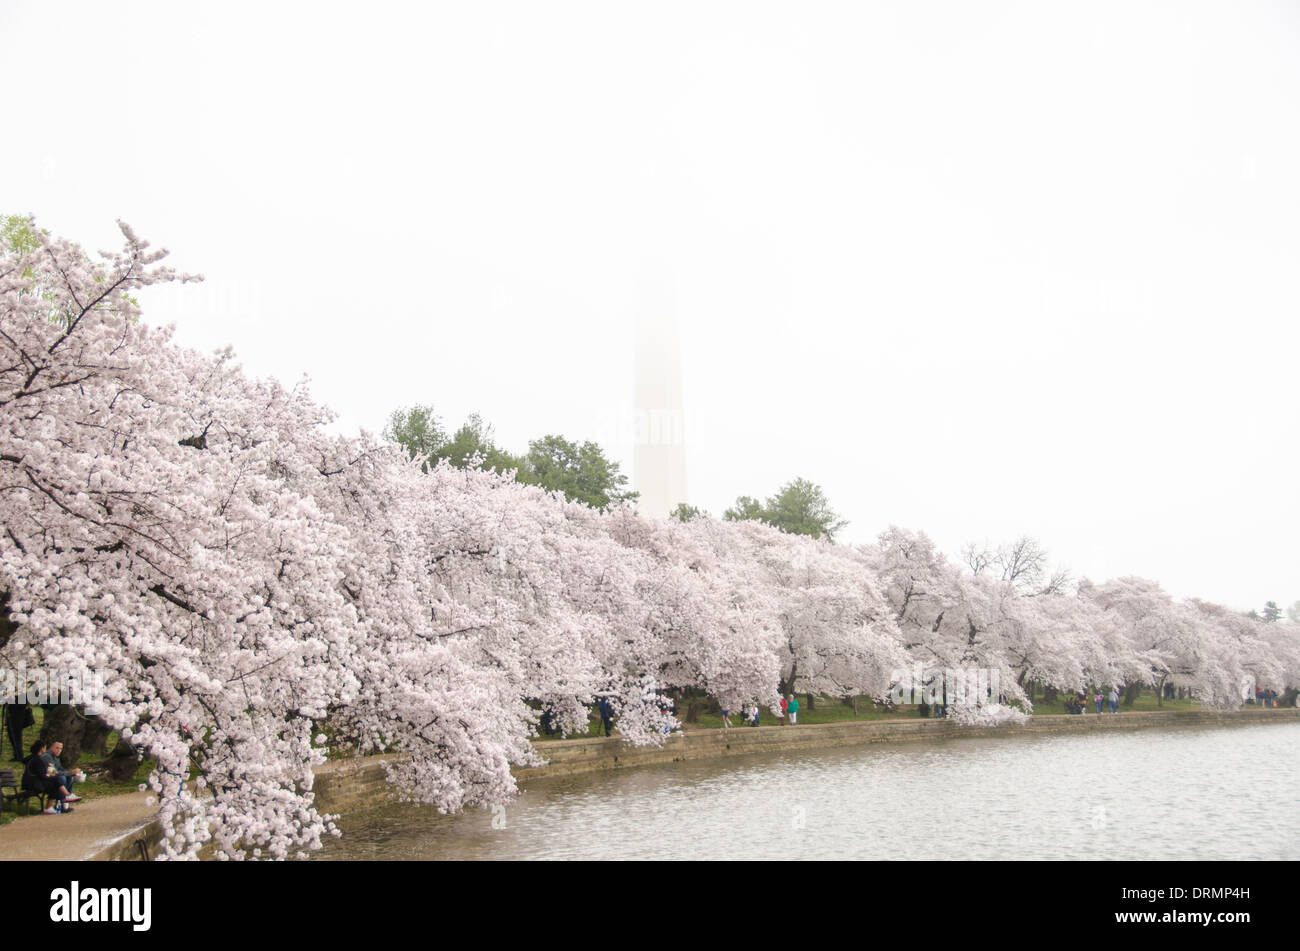 WASHINGTON DC, USA - jeder Frühling, das Blühen der fast 1700 japanische Kirschblüte Bäume rund um das Tidal Basin (und etwa 2000 anderen in der Nähe) ist einer der wichtigsten touristischen Zeichnen nach Washington DC. Im Hintergrund ist das Washington Monument, das teilweise von Wolken verdeckt. Stockfoto